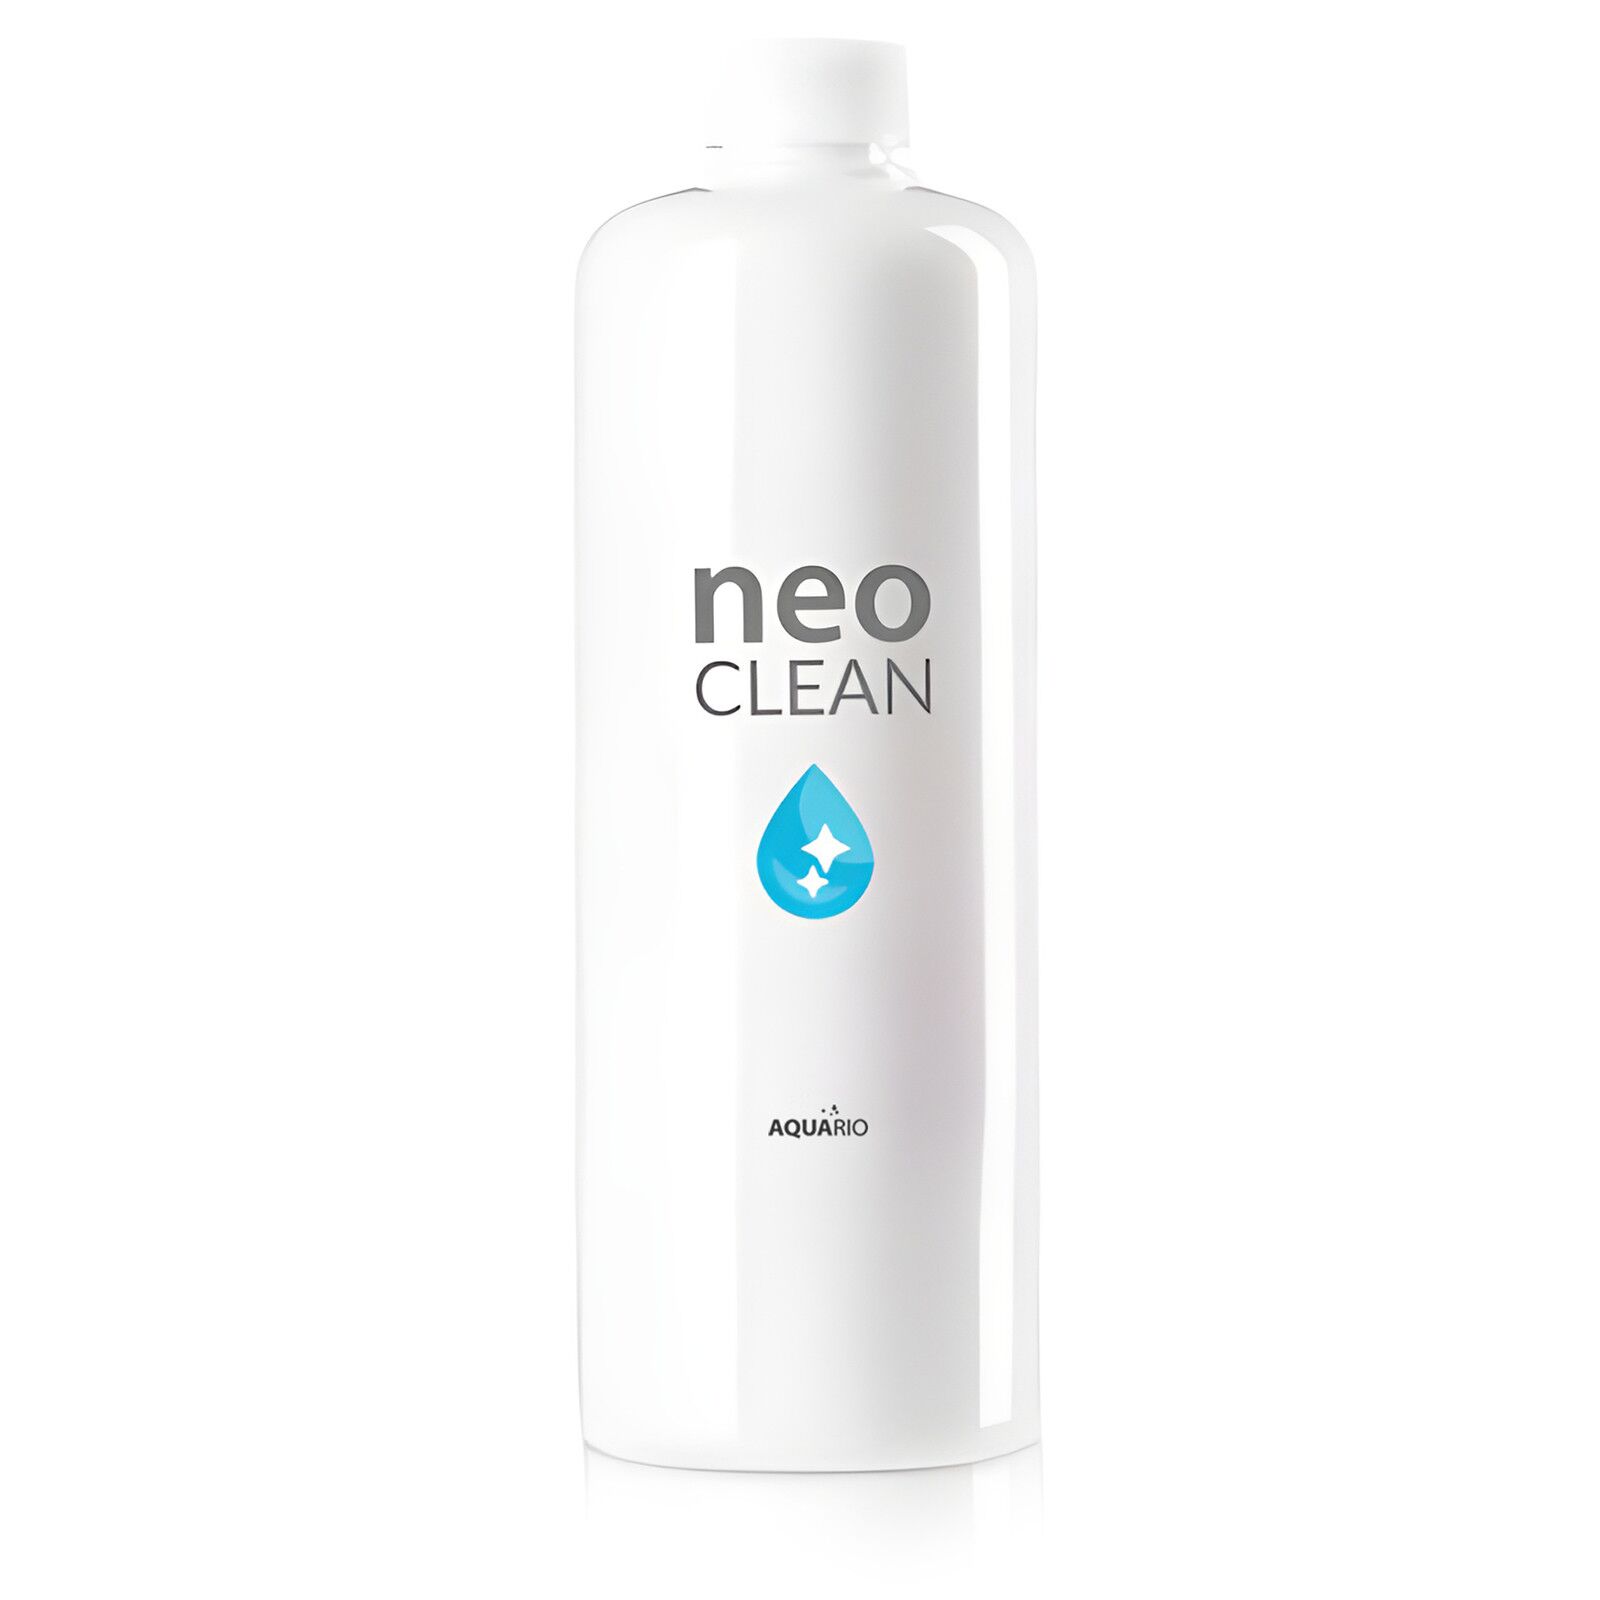 AQUARIO - Neo Clean - Water Conditioner